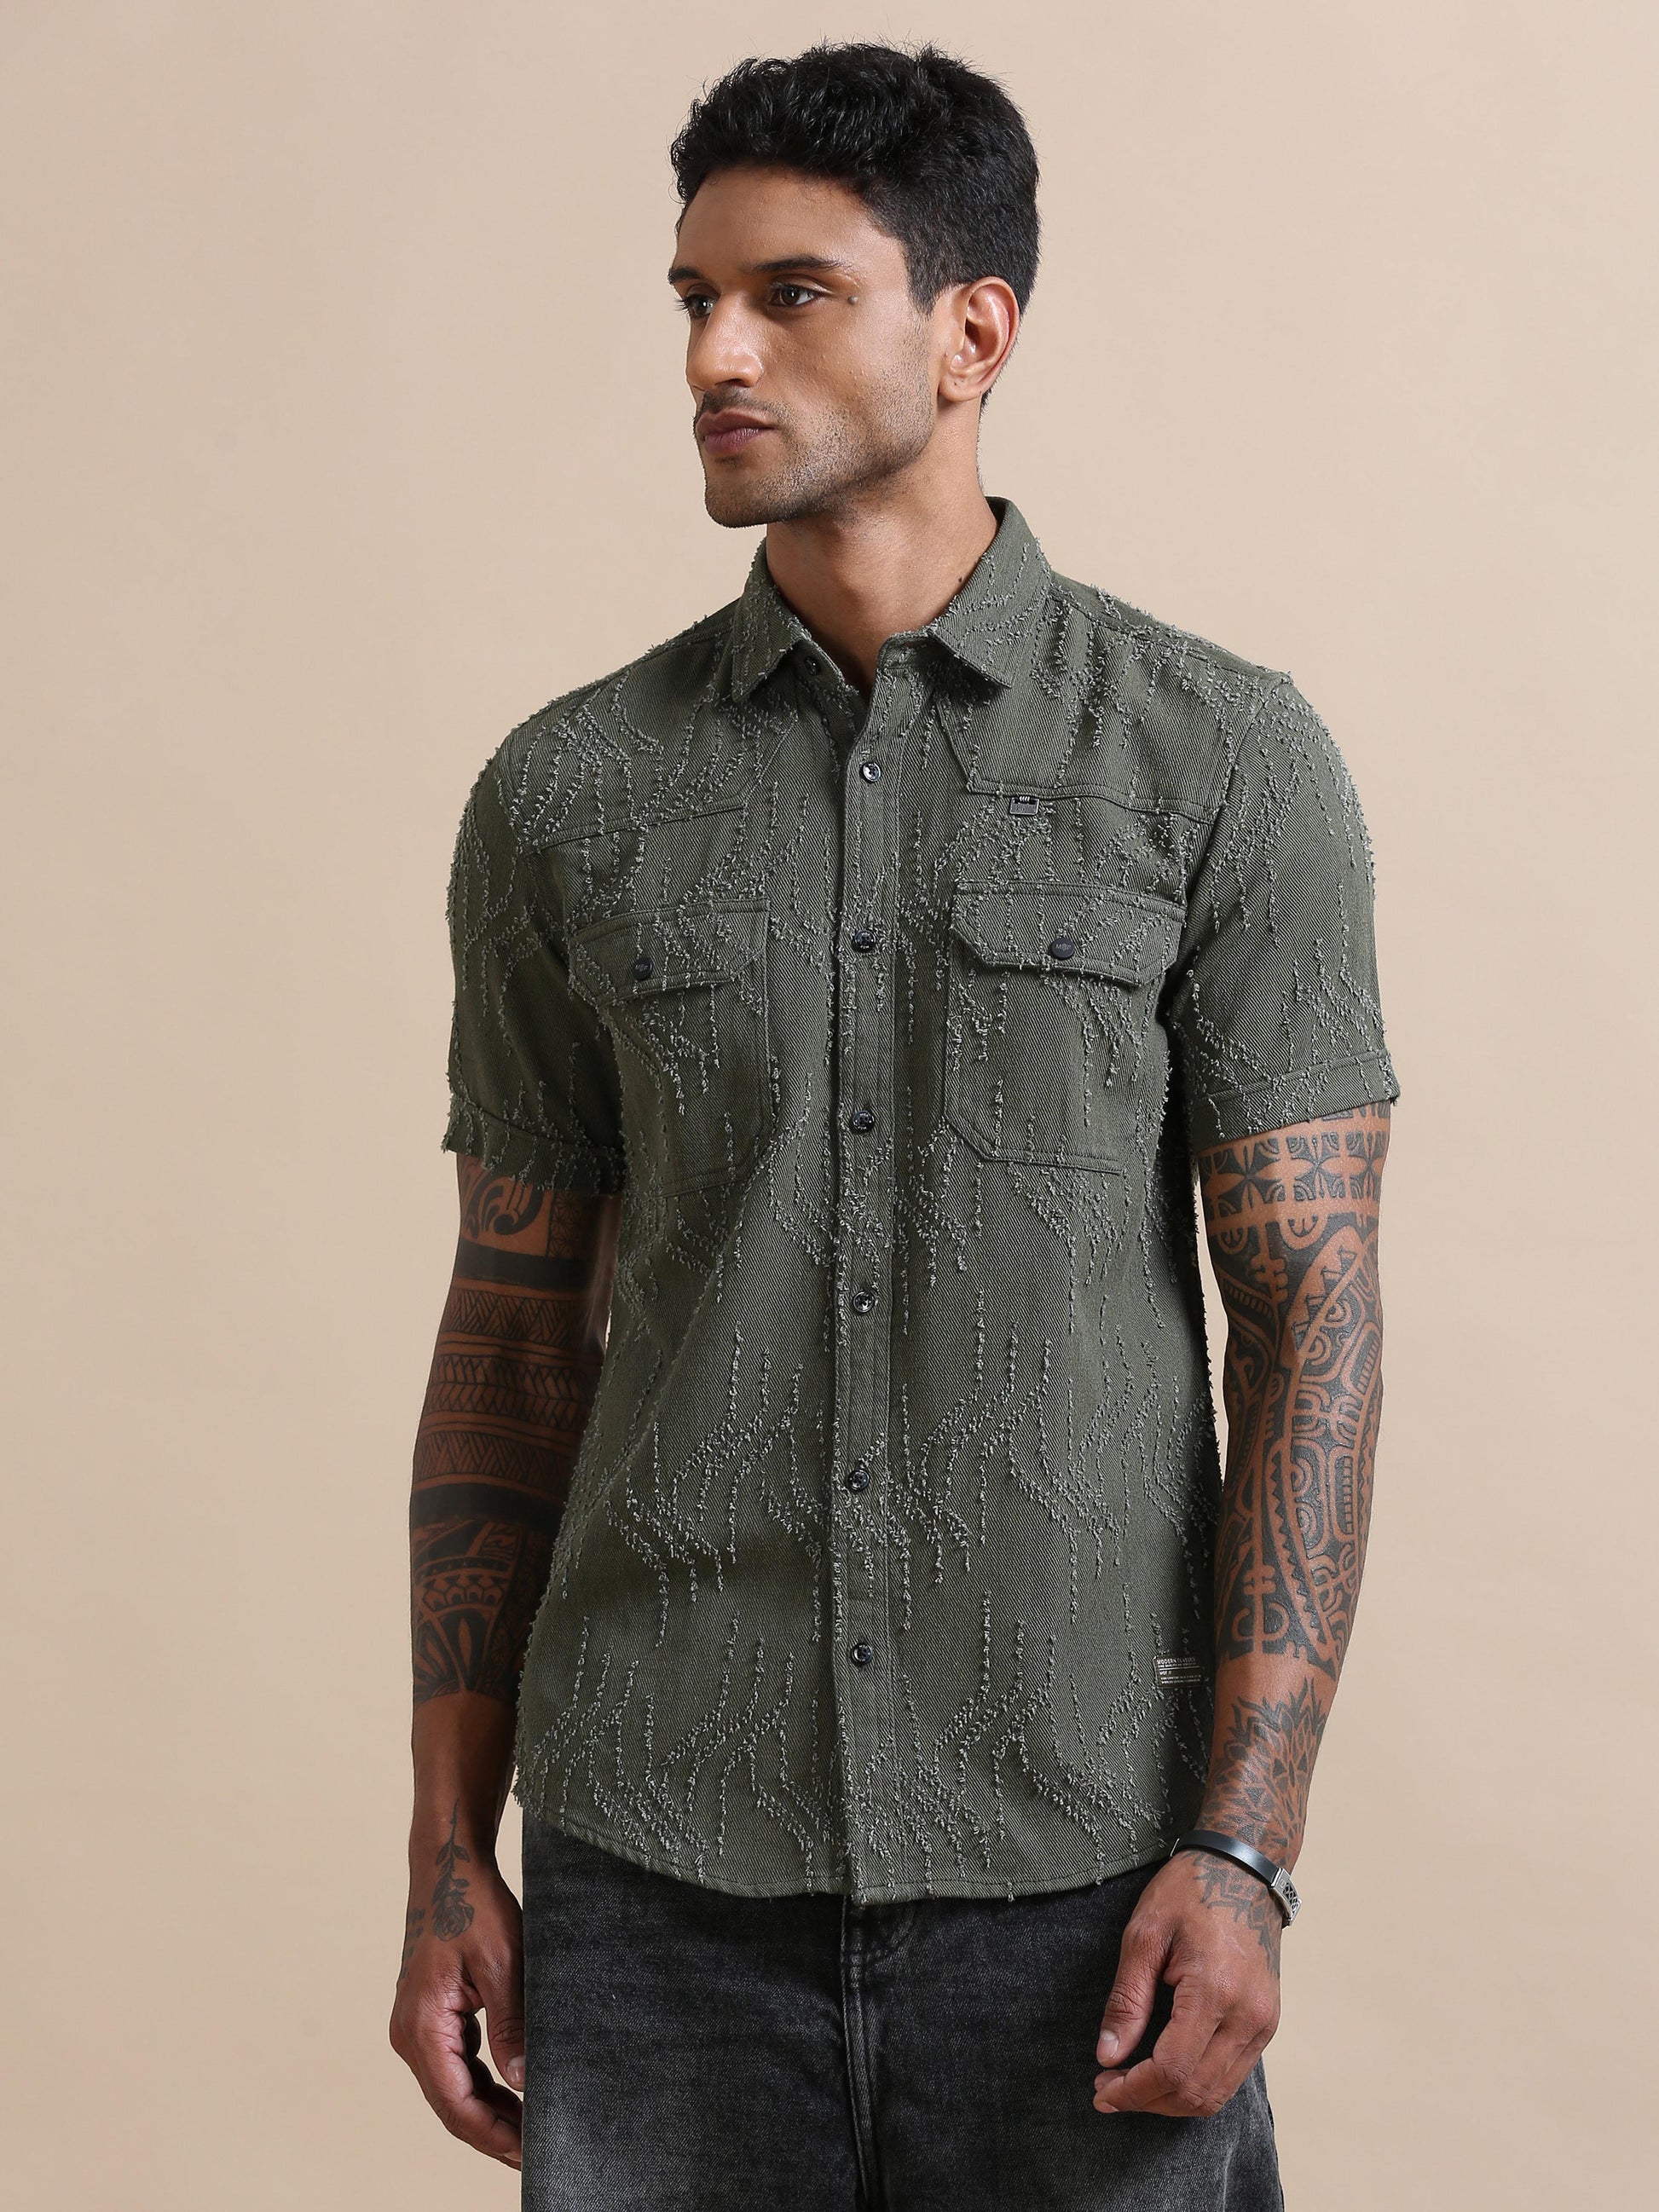 Denimverv Olive Green Solid Shirt For Men